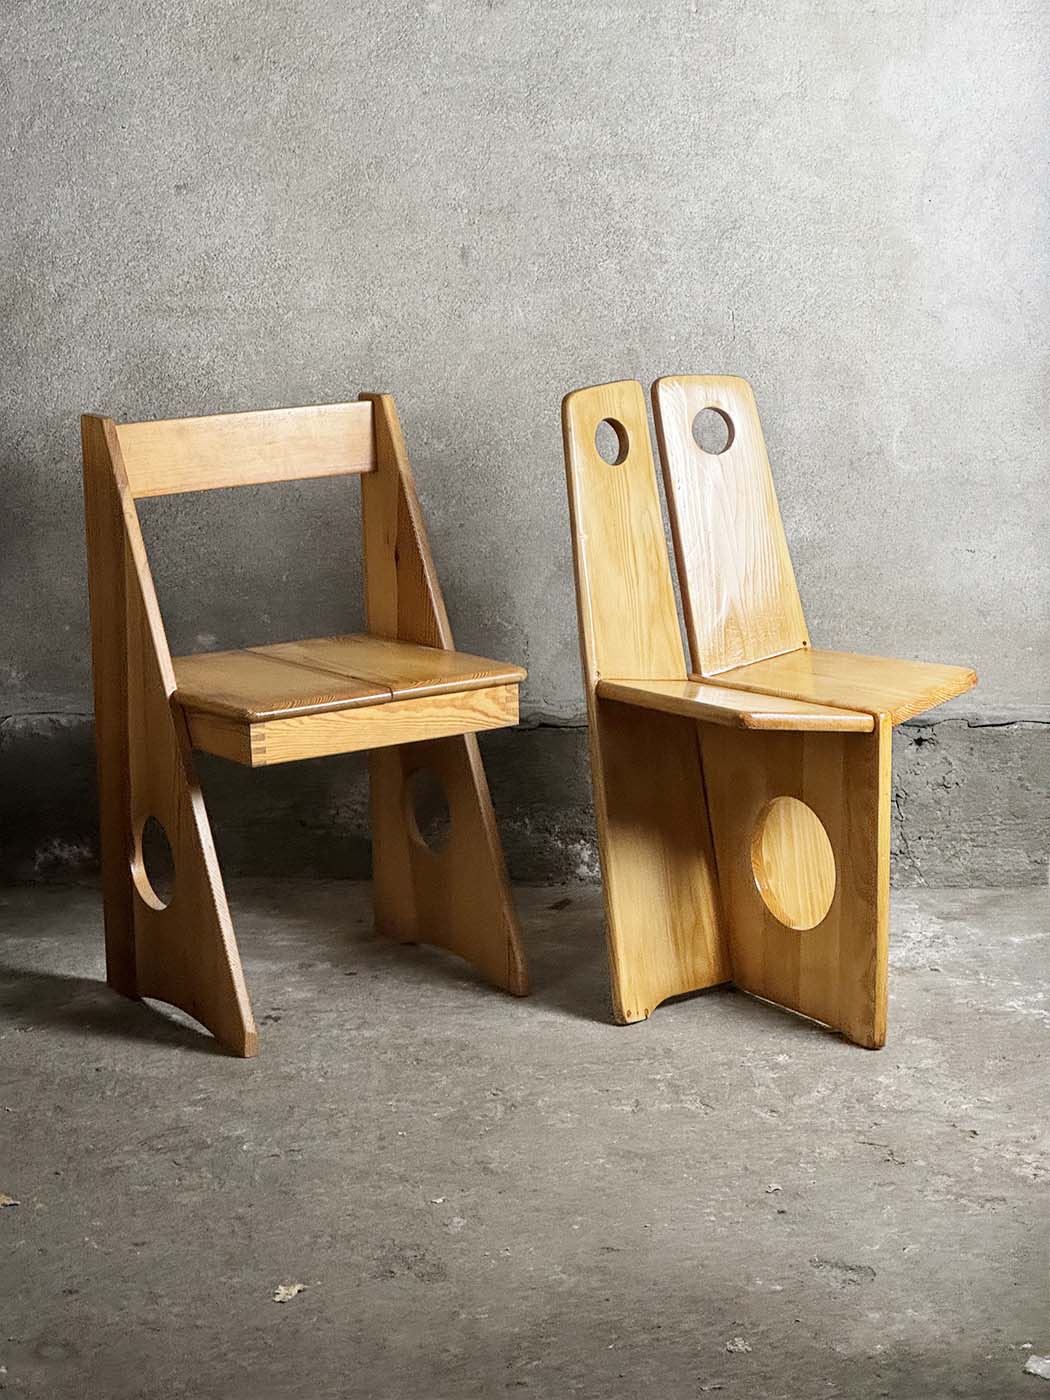 Gilbert marklund chairs krzeslarz